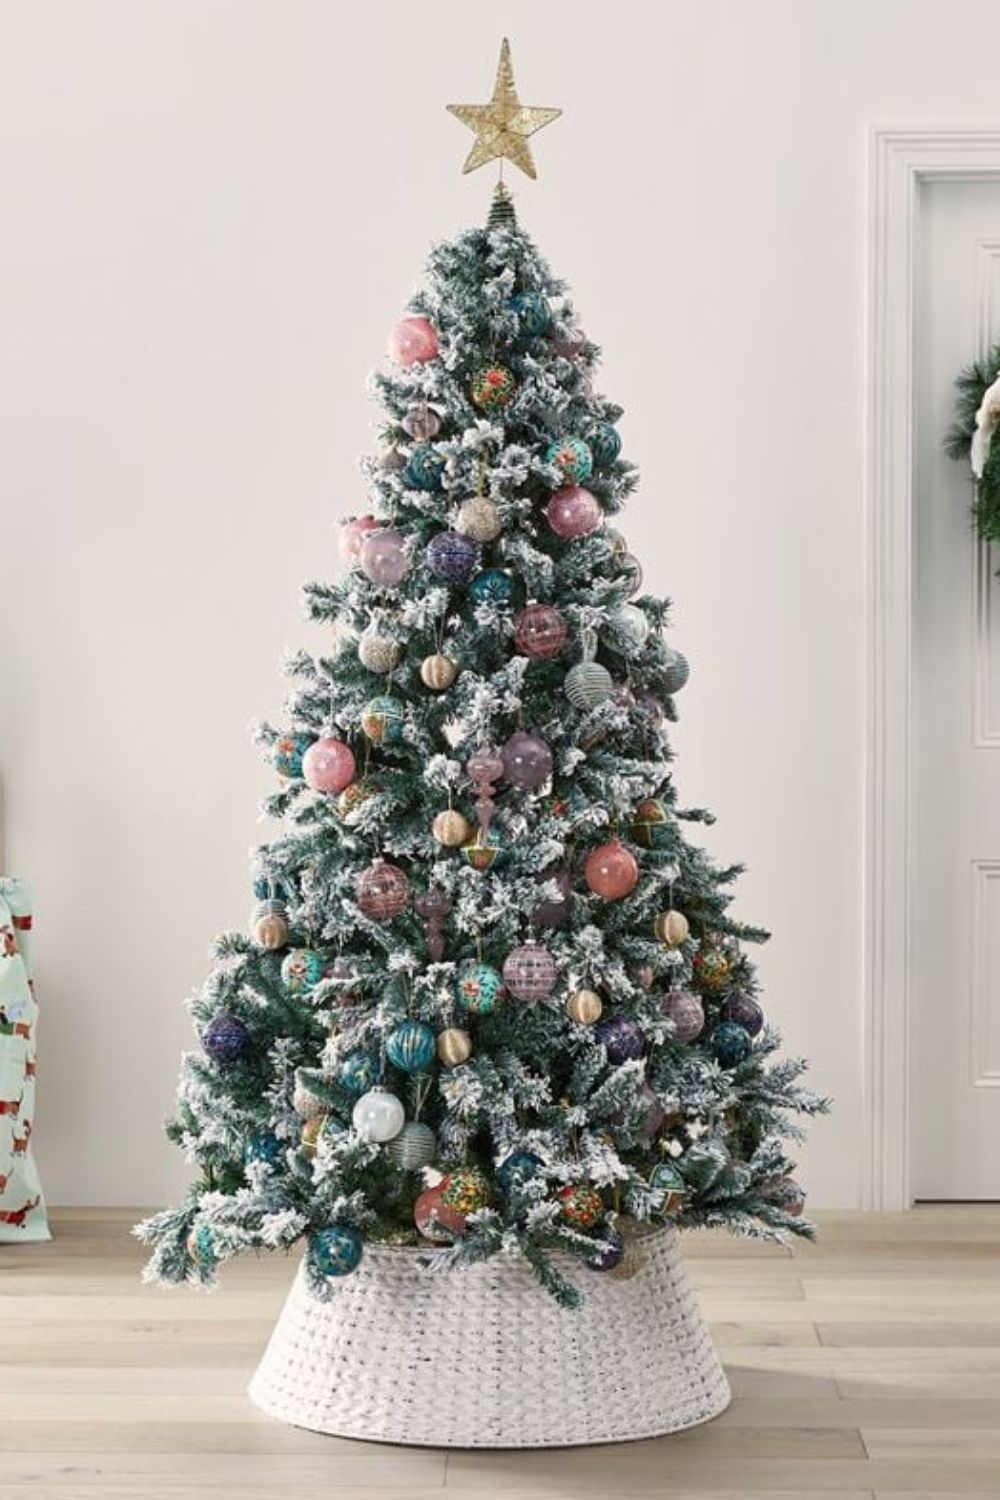 Adairs white & green winter Christmas tree